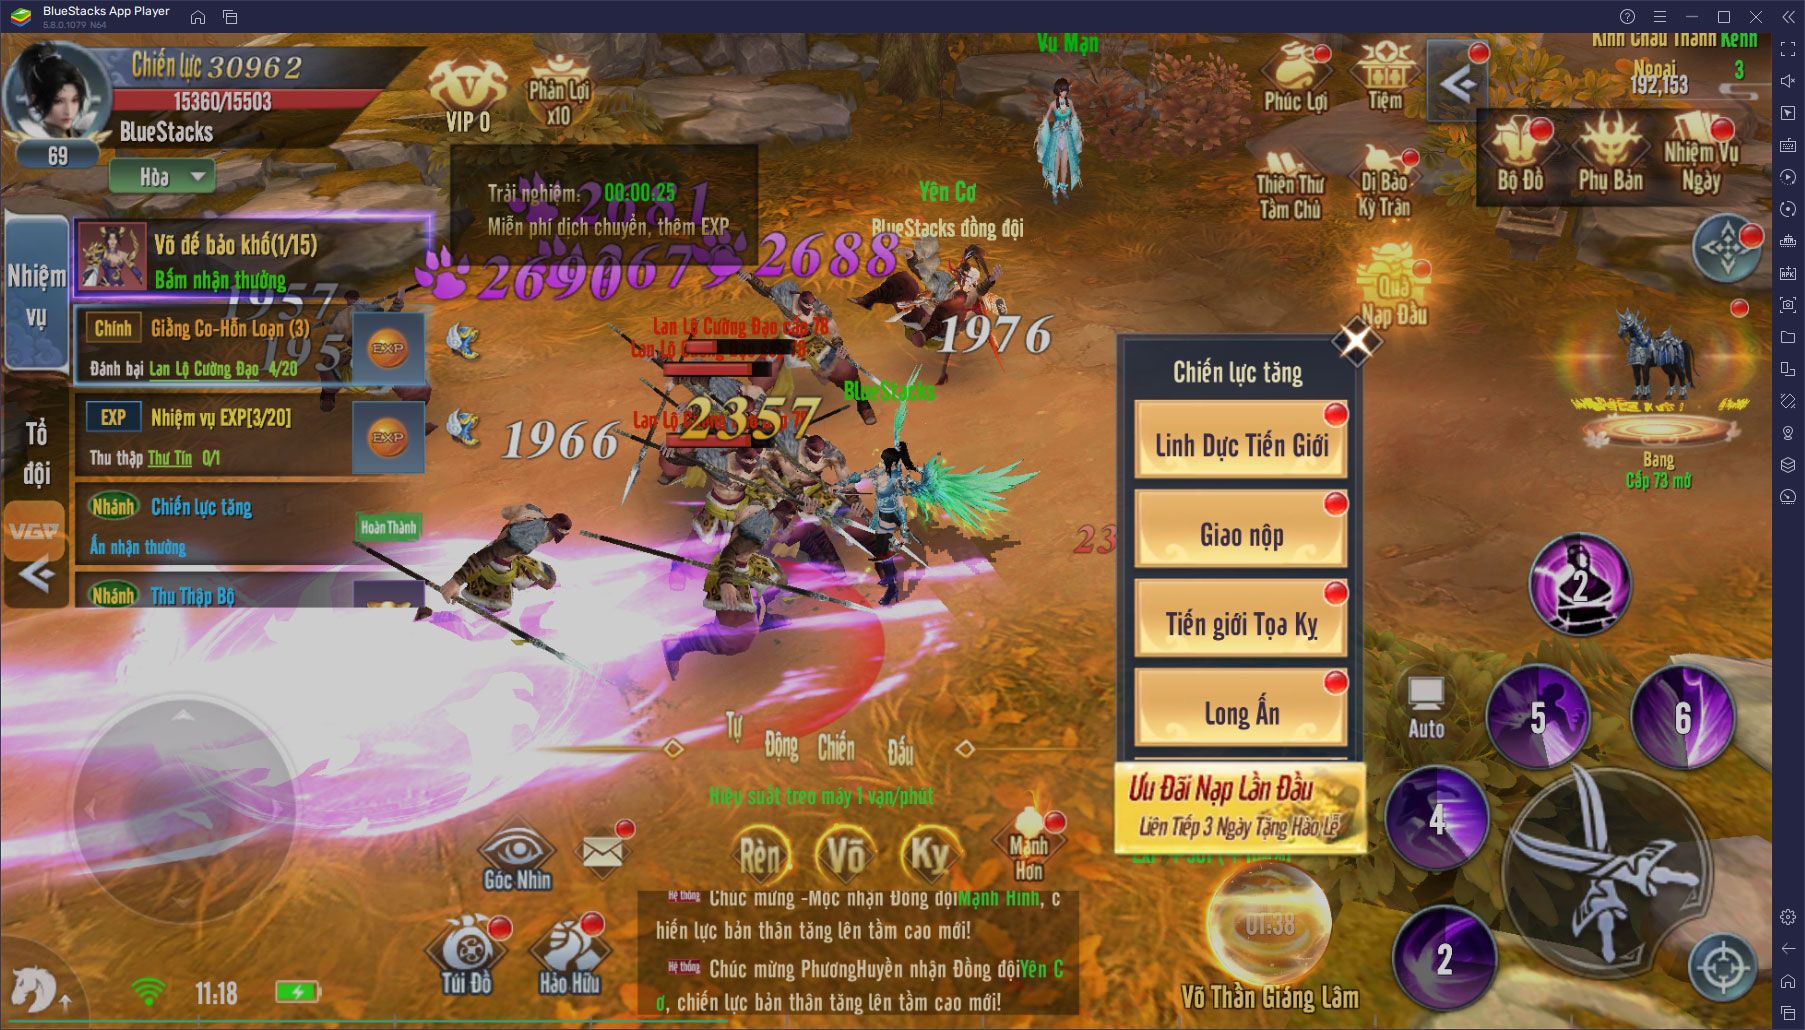 Trải nghiệm game Võ Lâm Thiên Tuyệt trên PC với BlueStacks